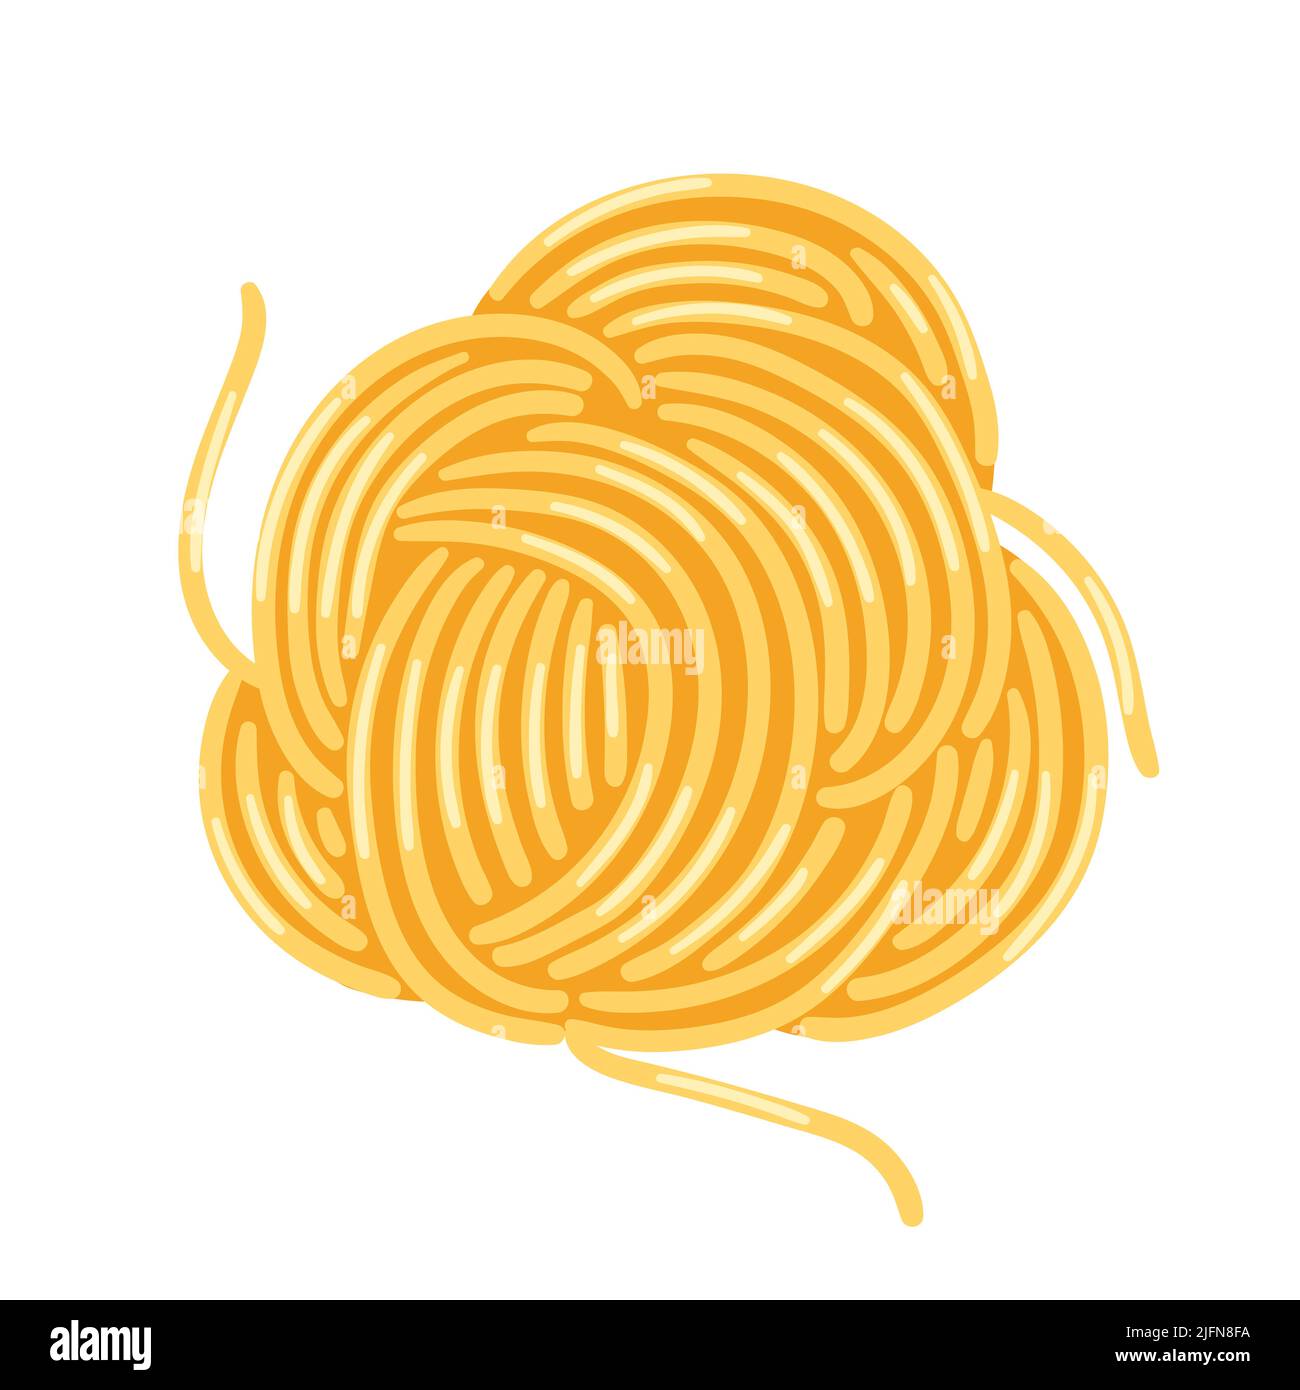 Illustrazione degli spaghetti di pasta italiana. Immagine culinaria per il menu di caffè e ristoranti. Illustrazione Vettoriale